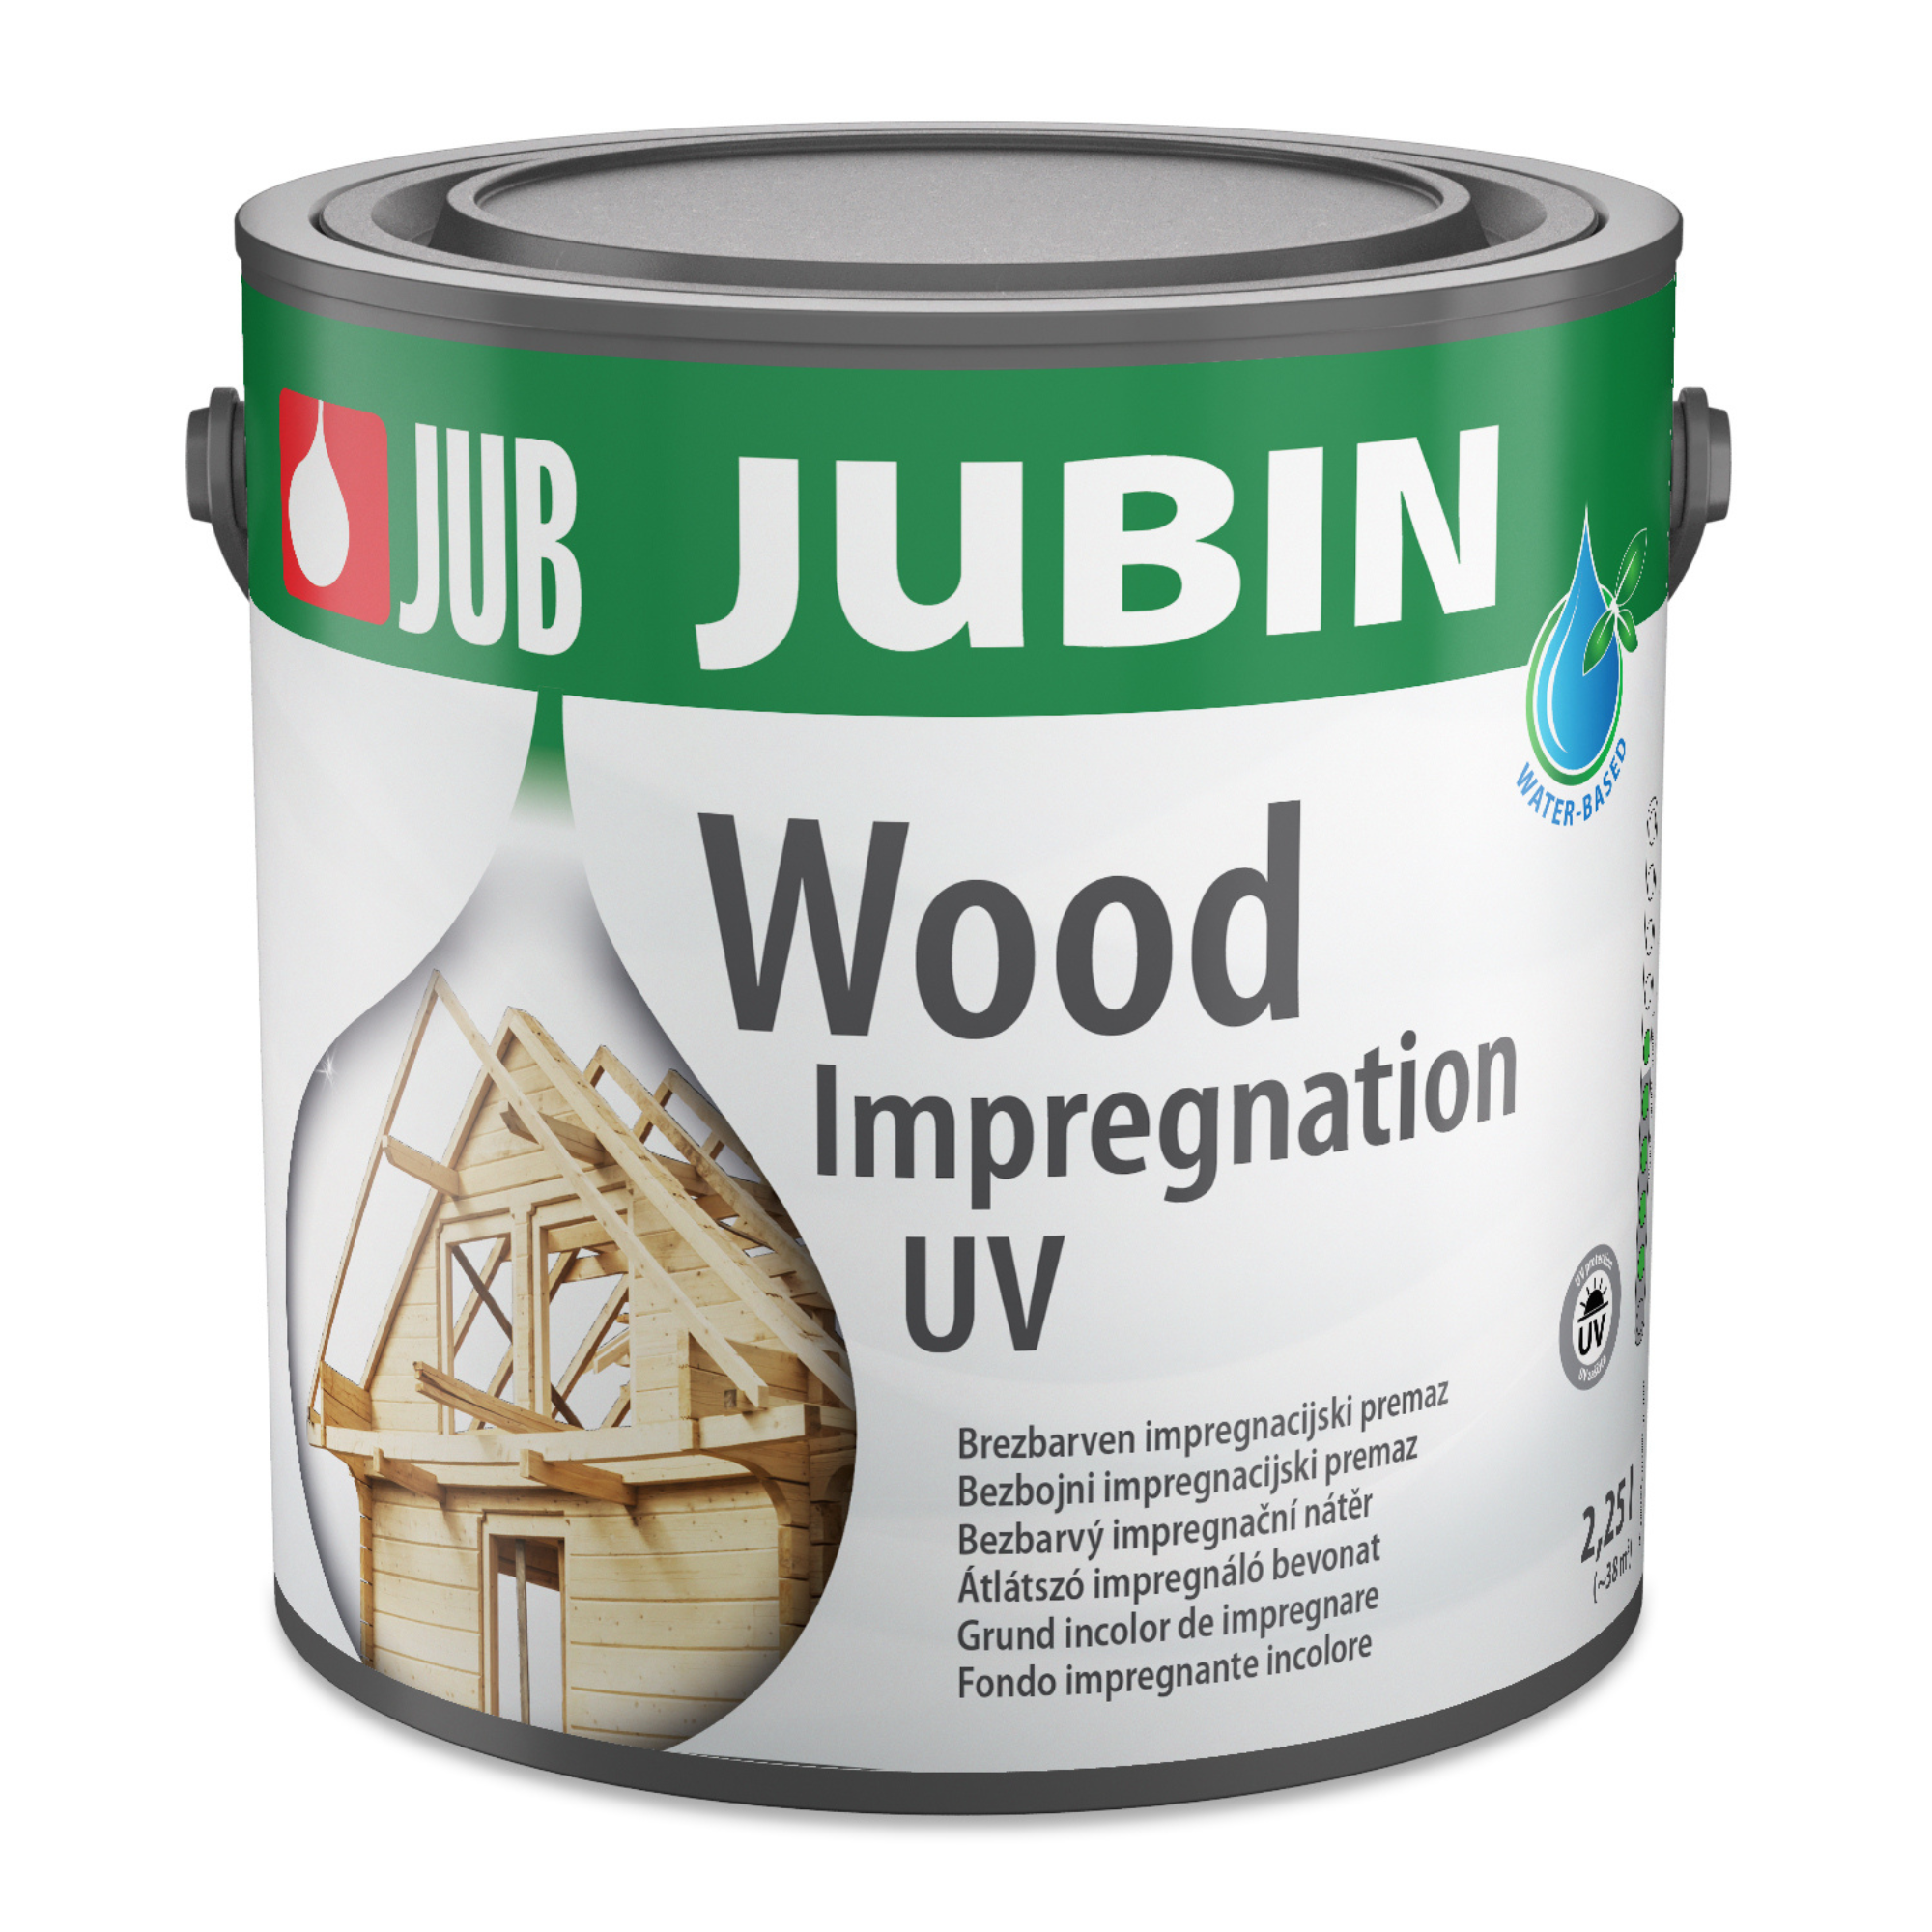 JUB JUBIN Wood impregnation UV biocídny impregnačný náter na drevo 2,25 l